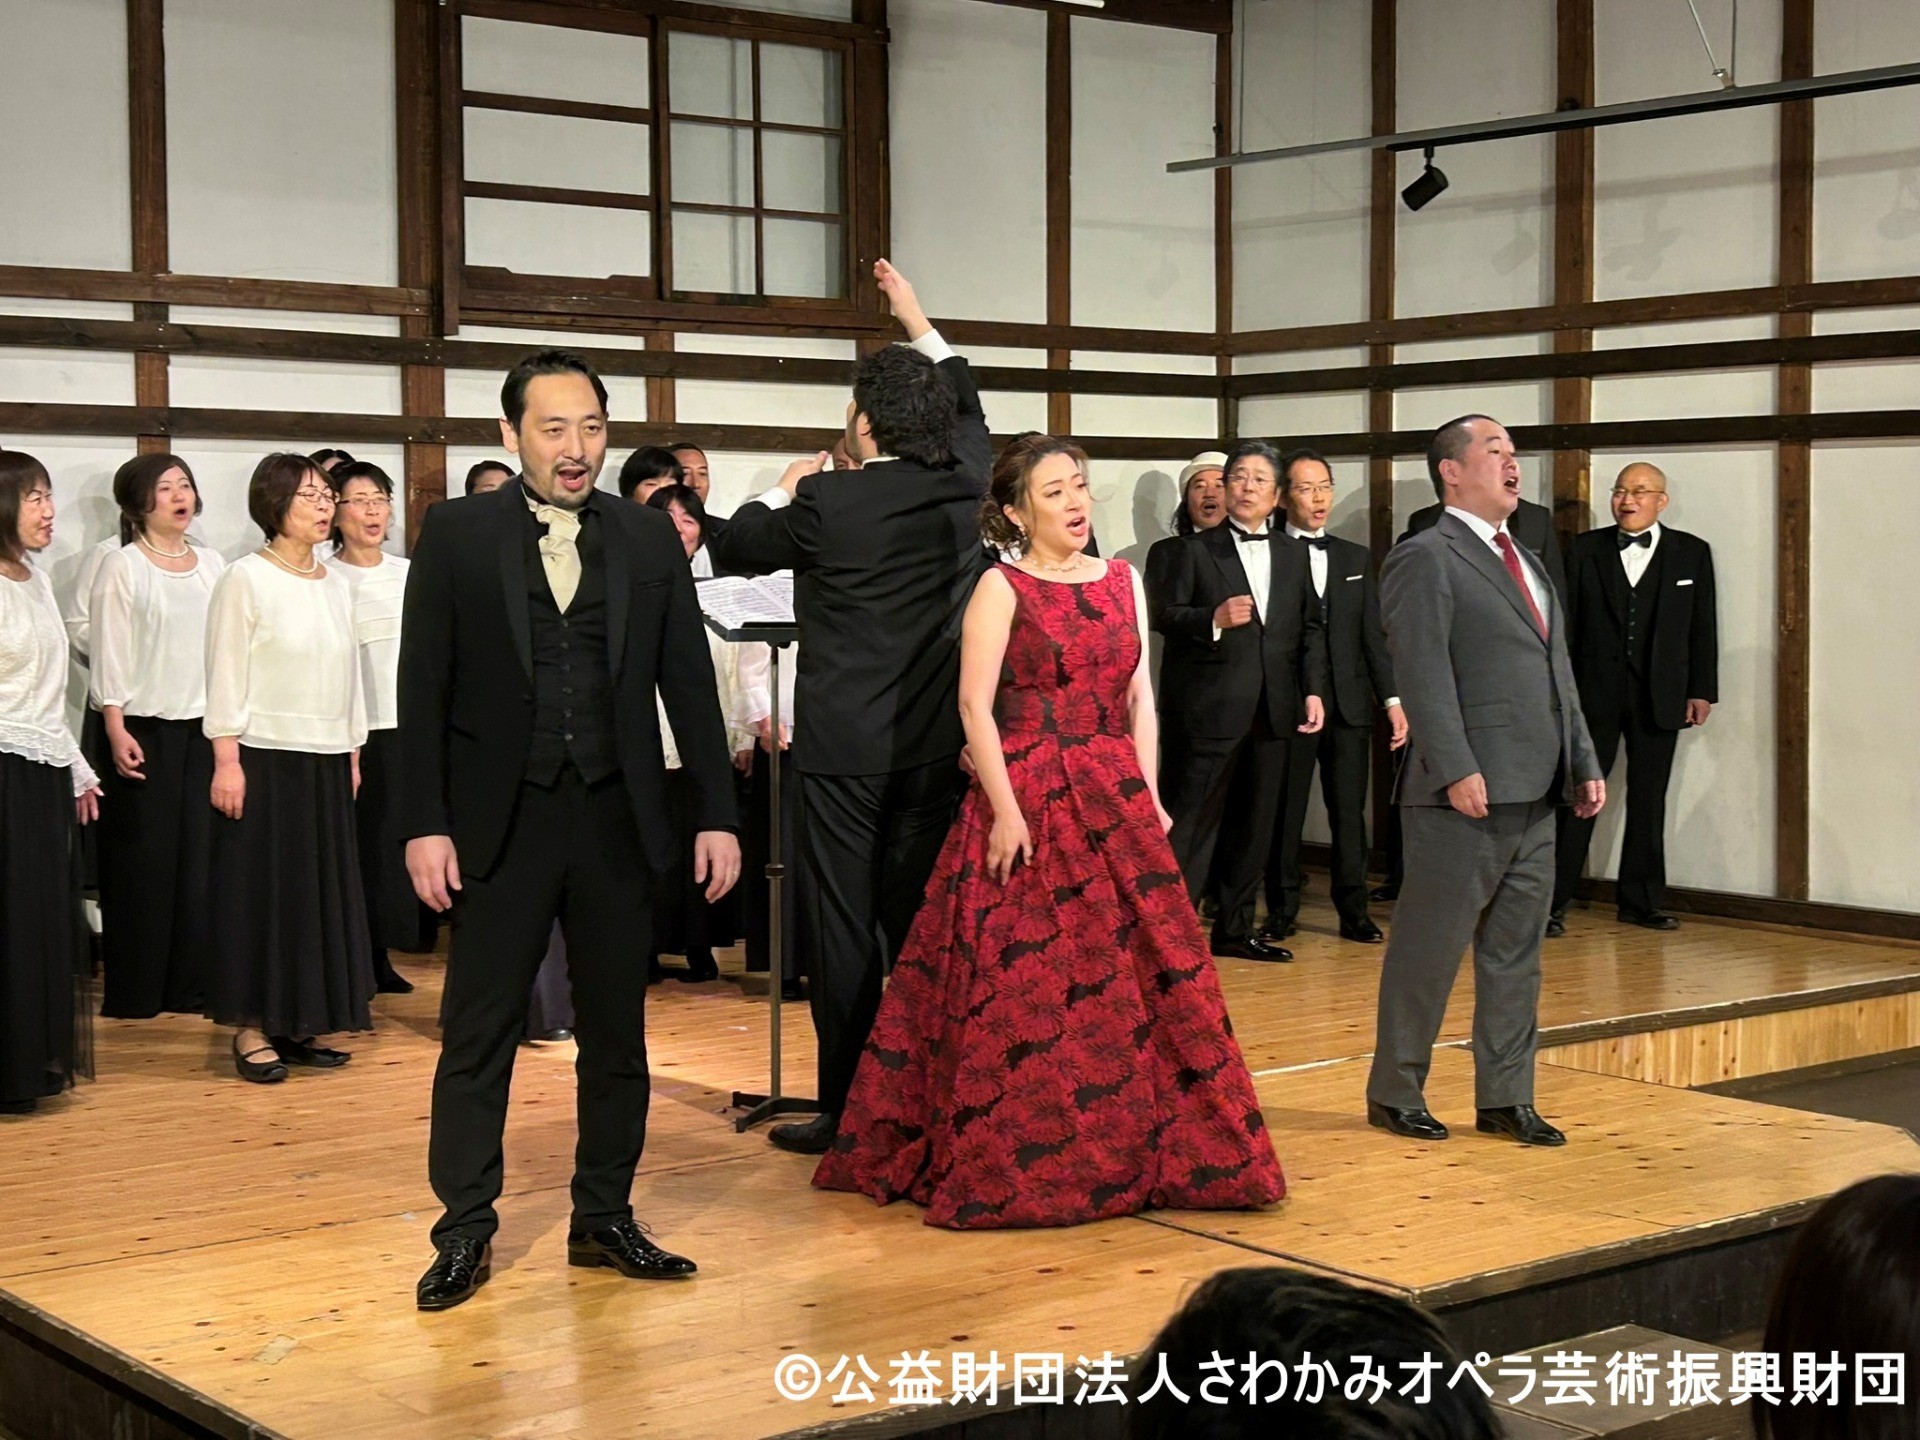 喜多方酒蔵オペラ「椿姫」を100倍楽しむために